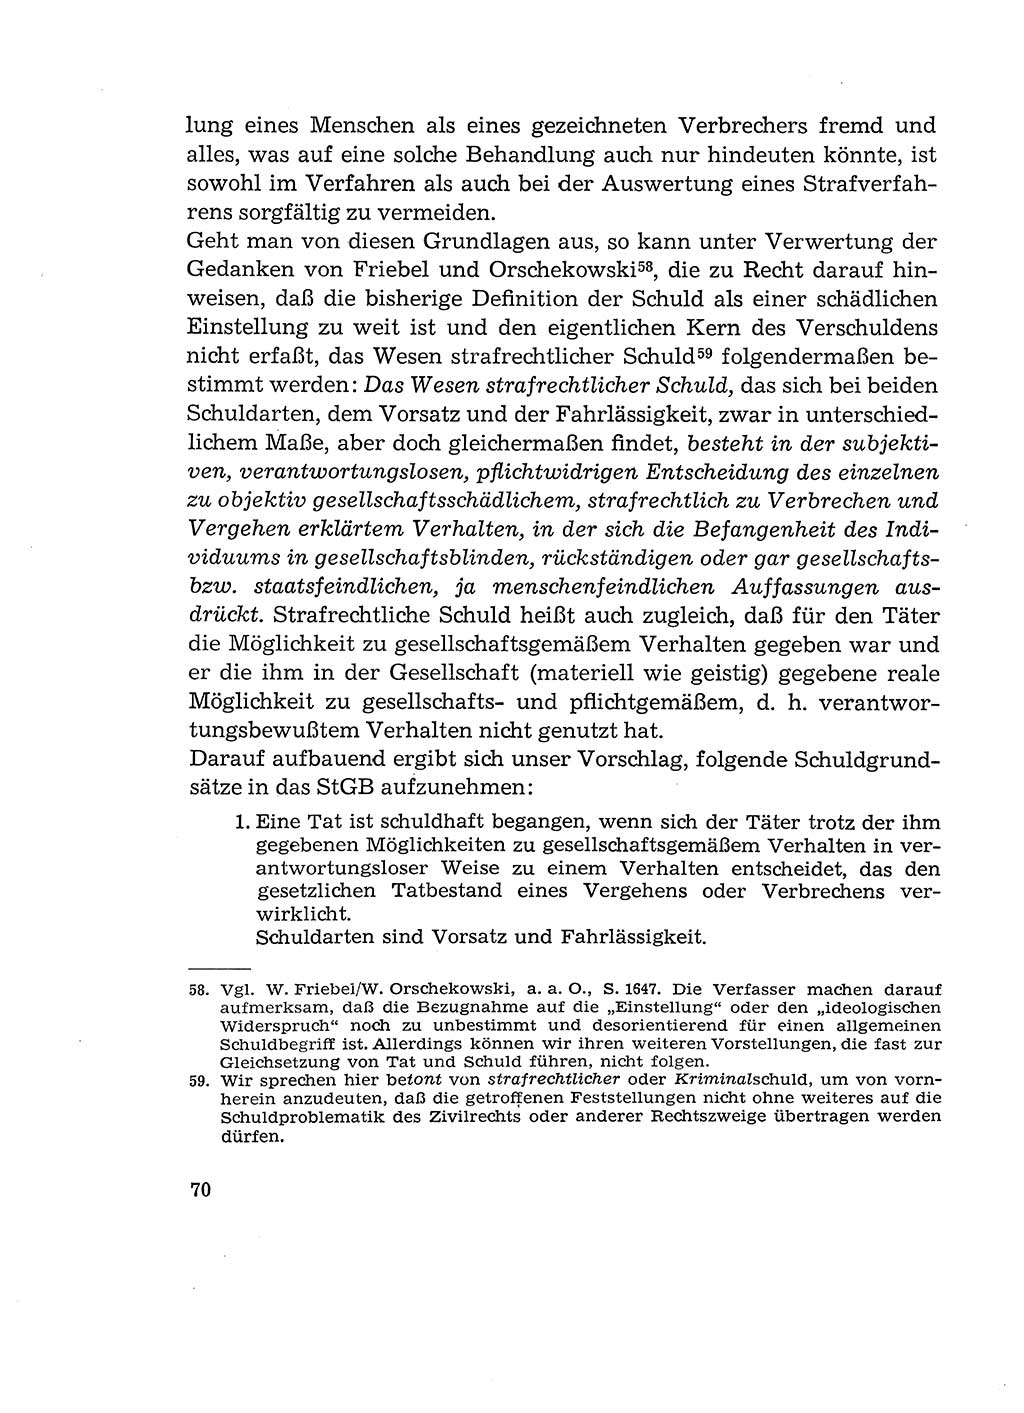 Verantwortung und Schuld im neuen Strafgesetzbuch (StGB) [Deutsche Demokratische Republik (DDR)] 1964, Seite 70 (Verantw. Sch. StGB DDR 1964, S. 70)